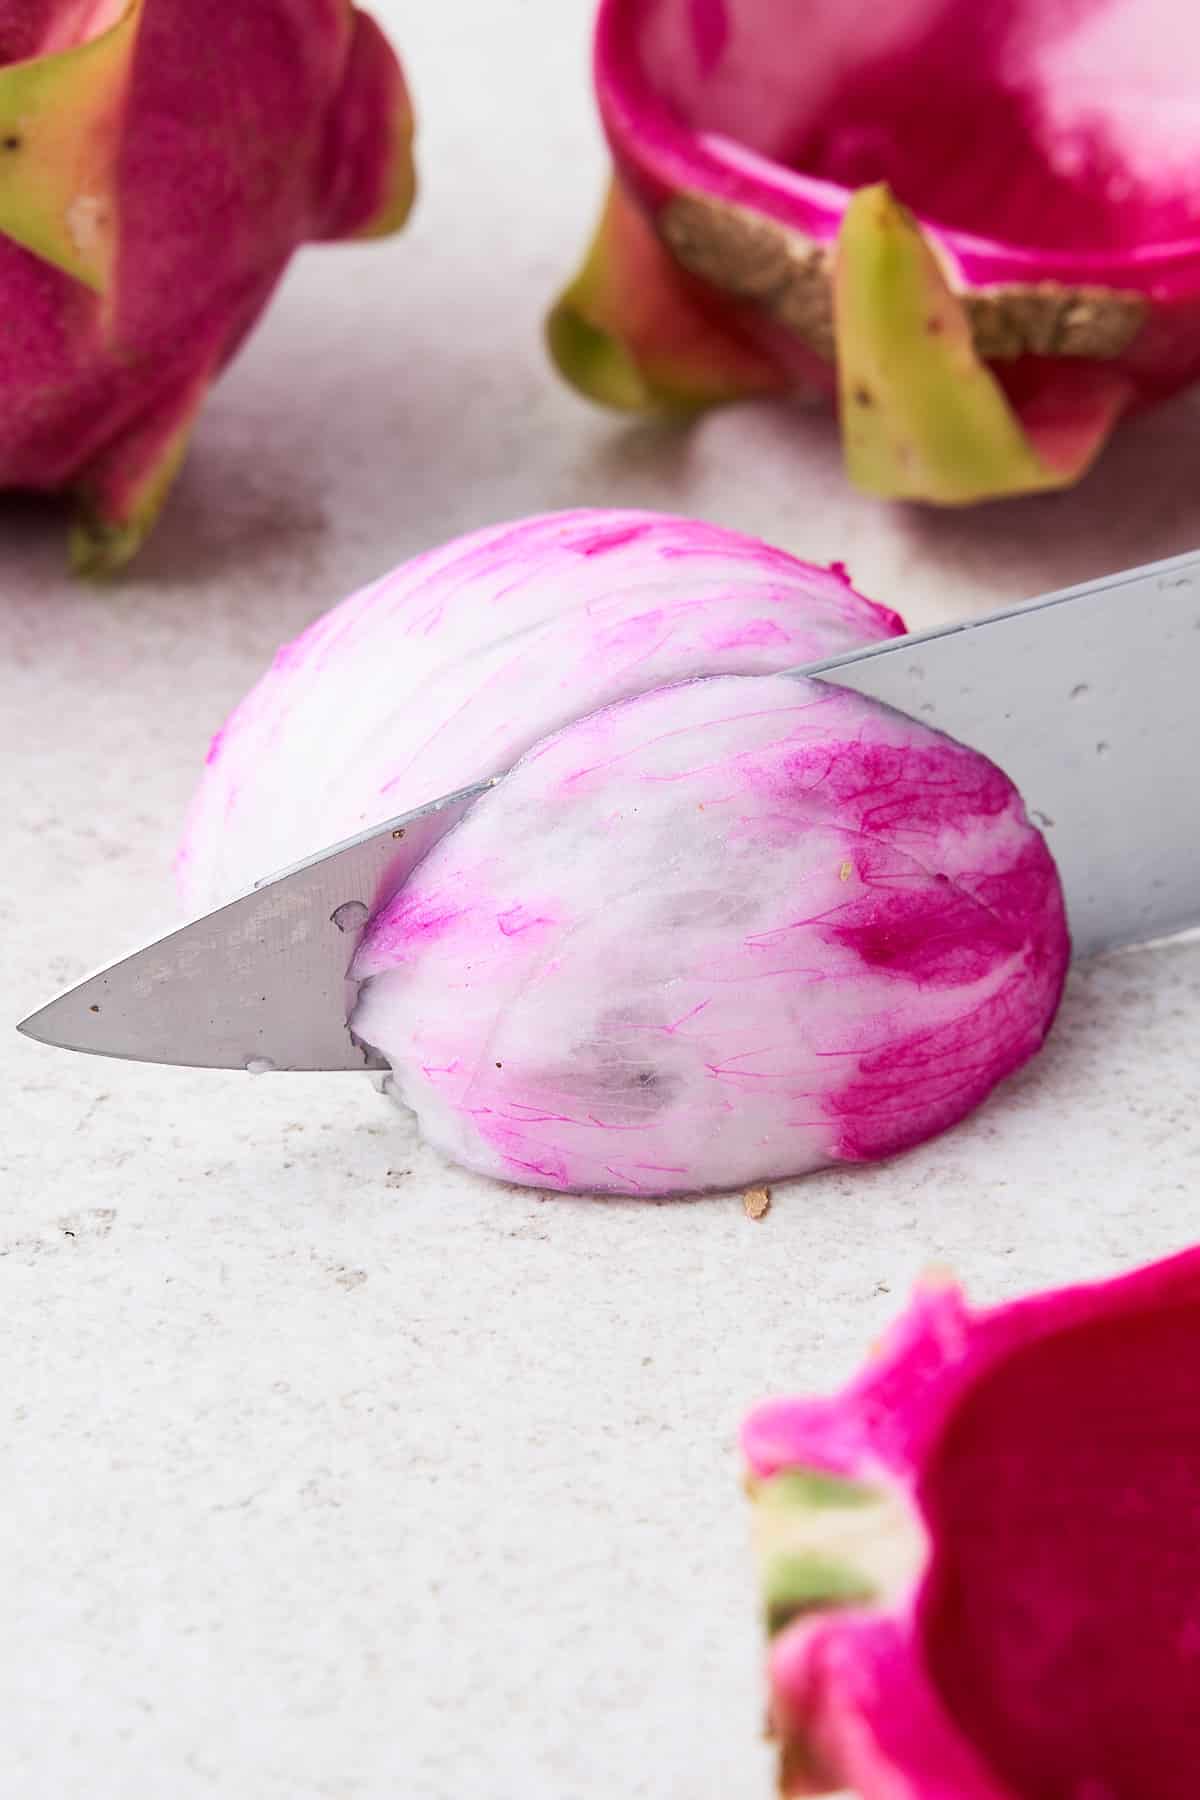 Knife slicing a dragonfruit